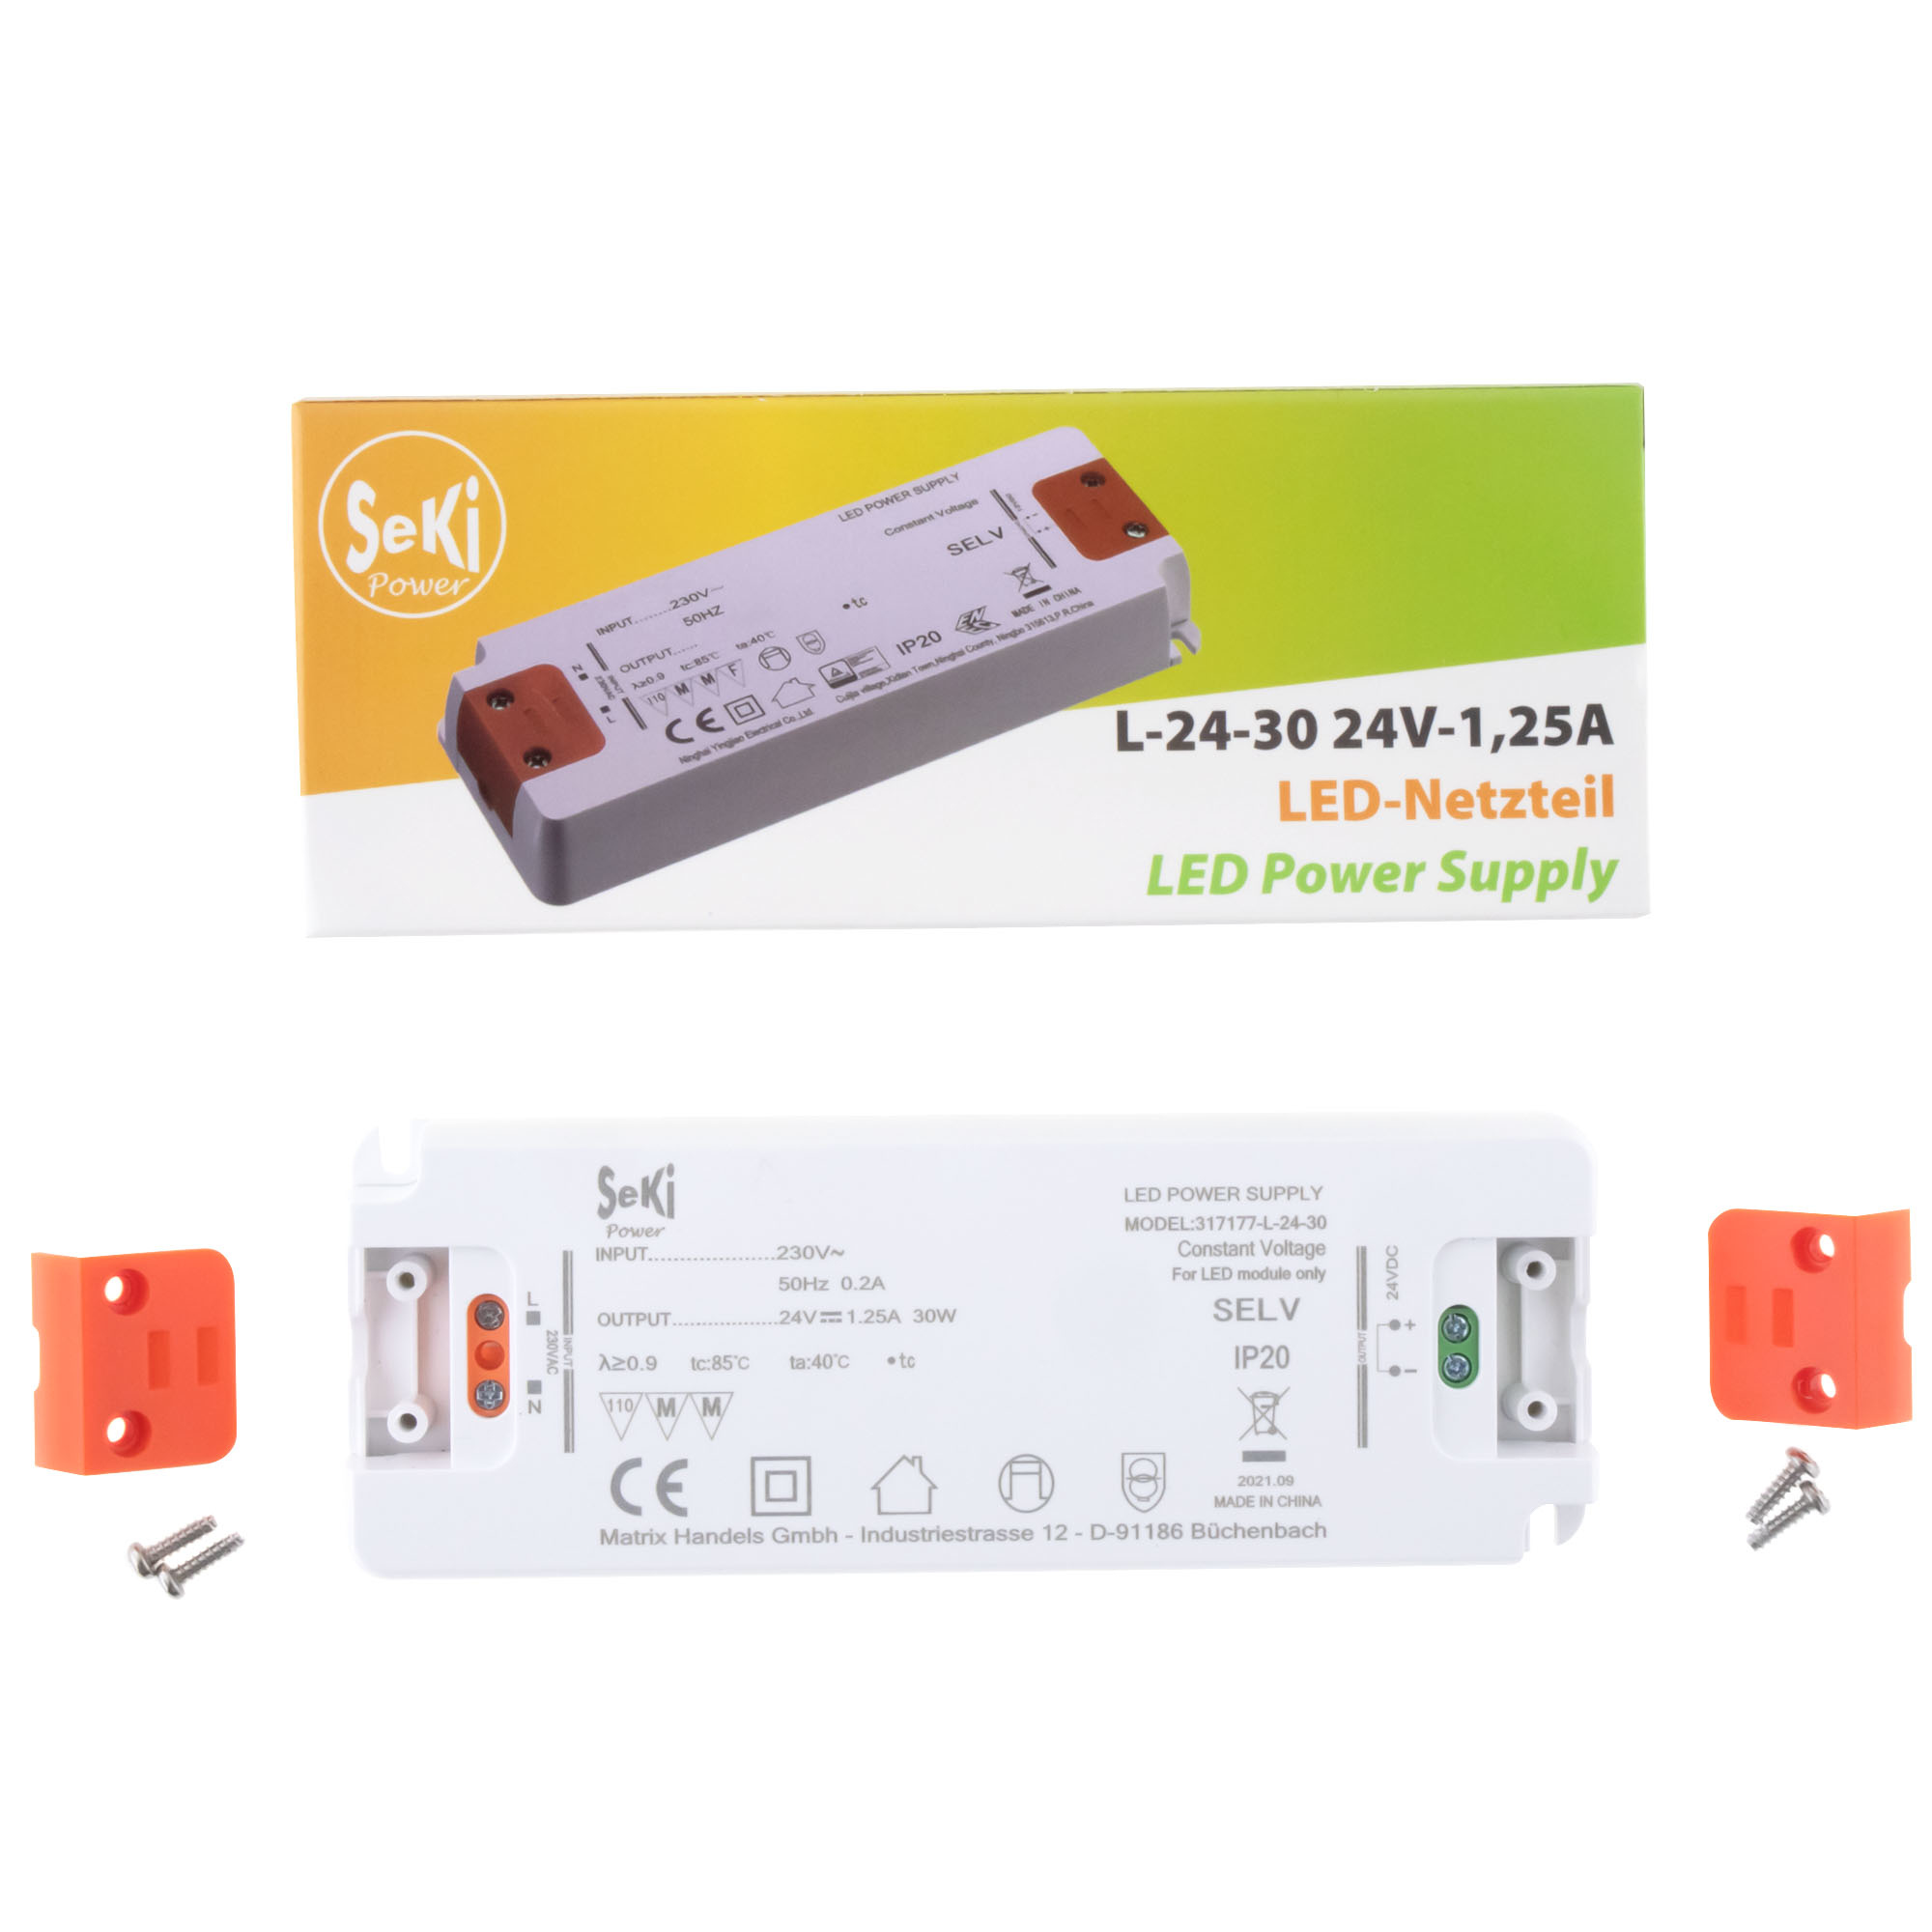 LED power supply L-24-30 - 24V - 1.25A - 30W